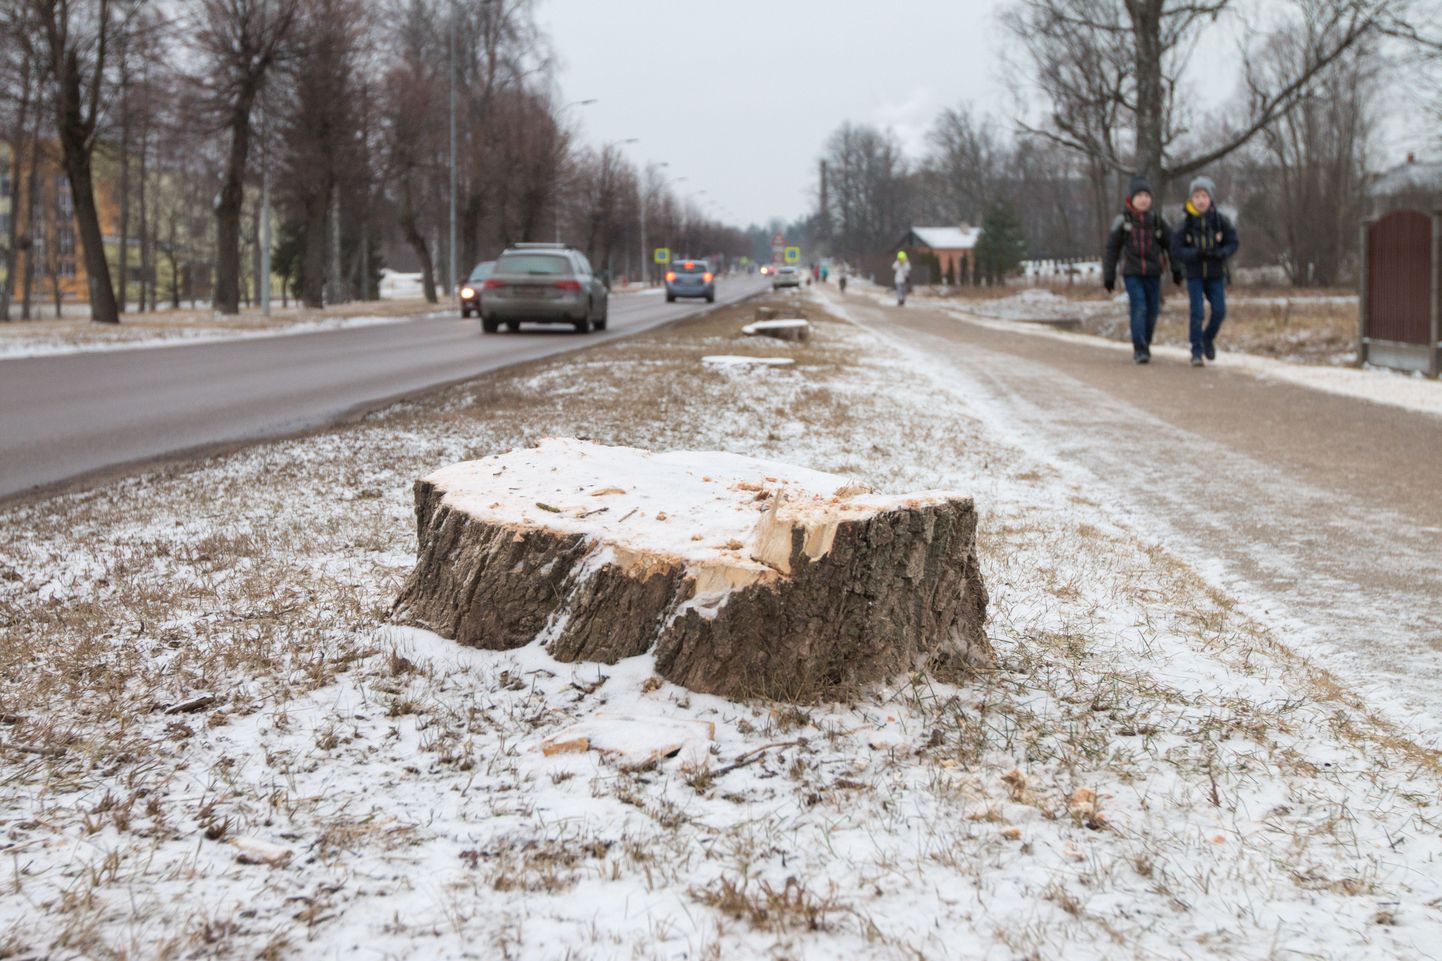 Ausekļa tänava äär Valkas pärast puude mahavõtmist